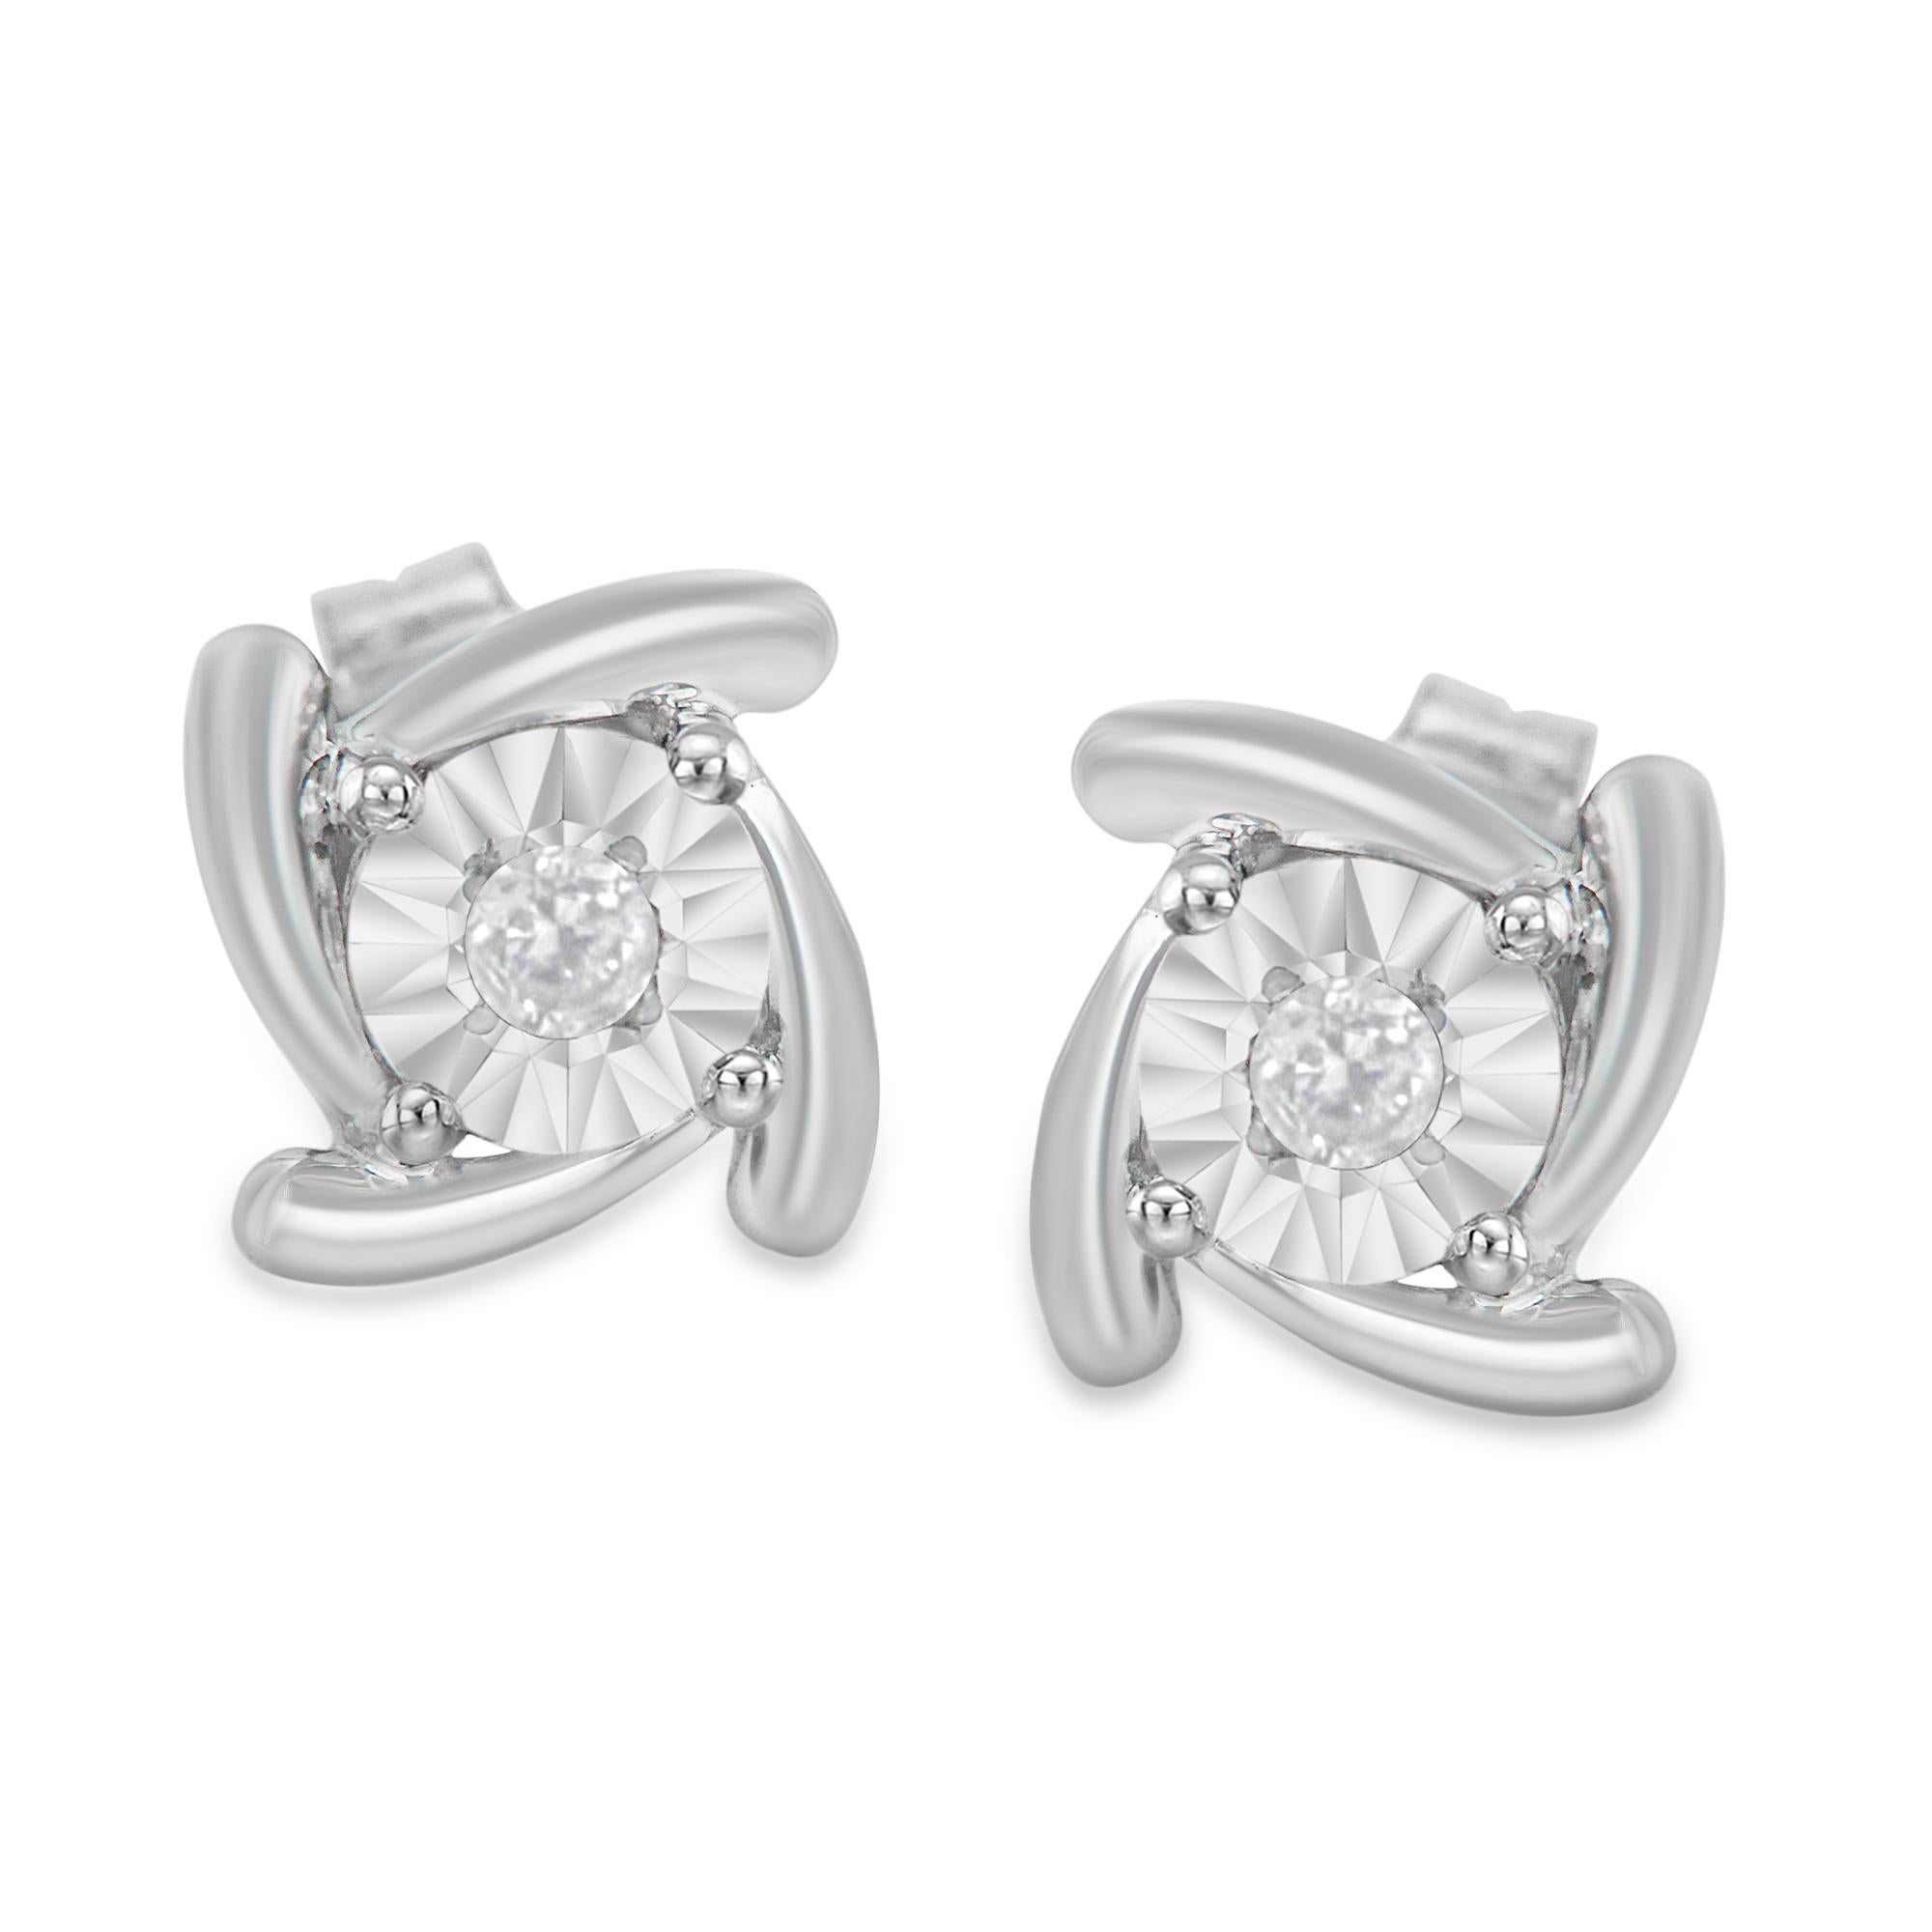 Elegante Ohrstecker aus 925er Sterlingsilber und echten Diamanten. Jeder Ohrring präsentiert zwei Diamanten mit runder Form, Brillantschliff und einer Wunderfassung. Dieses feine Schmuckstück hat ein Gesamtgewicht von 1/10 Karat an Diamanten und